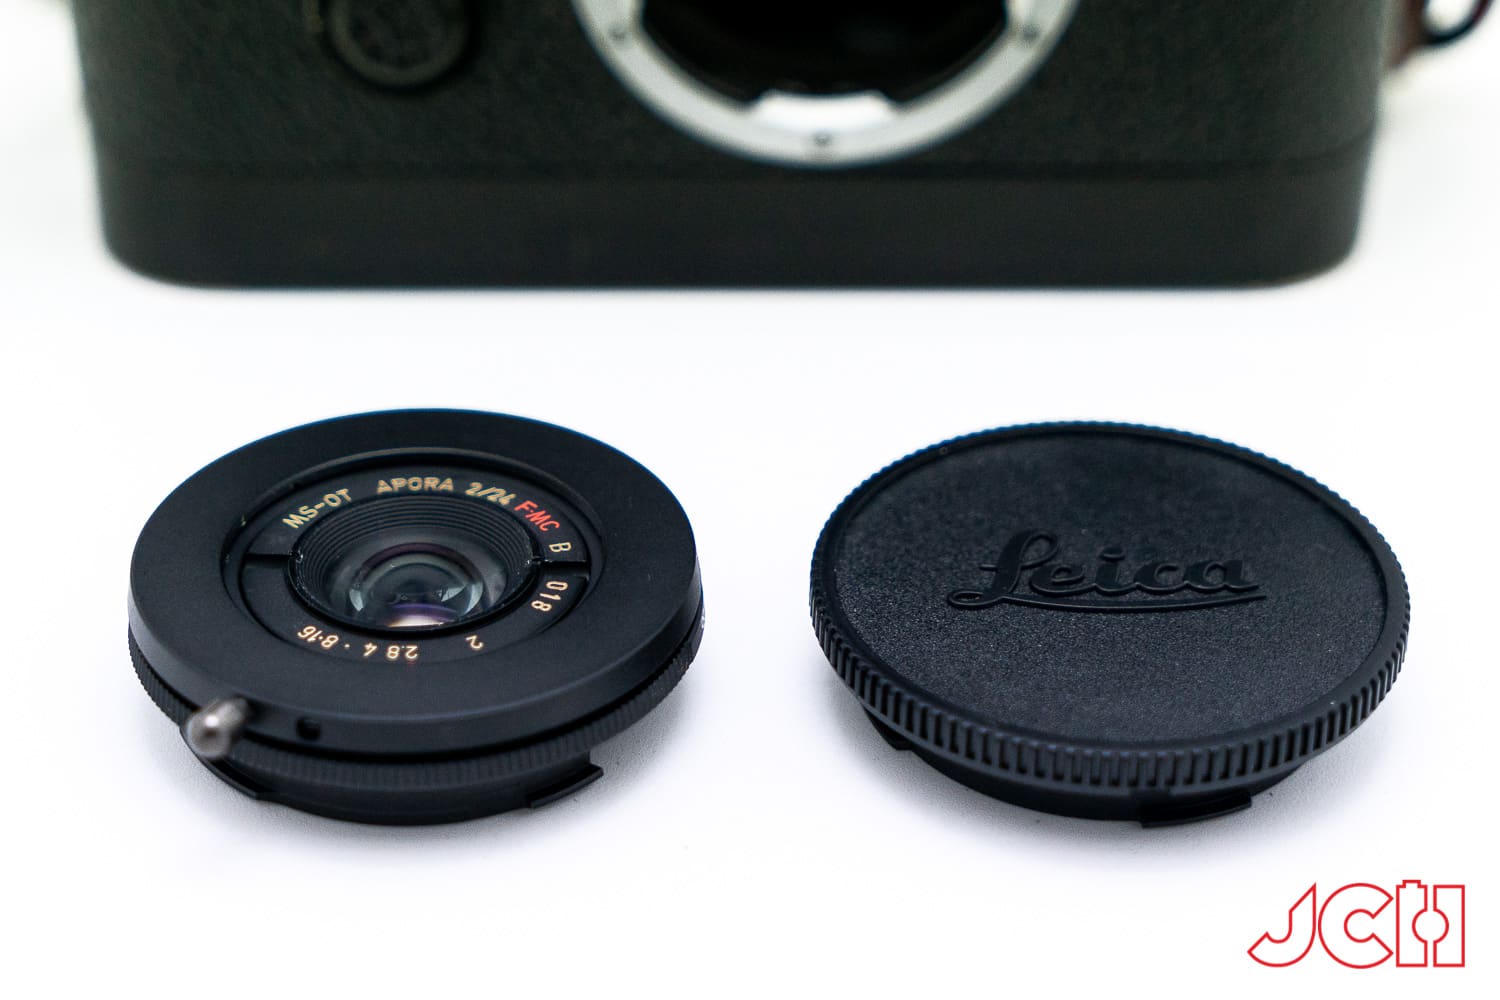 MS Optics ra mắt ống kính MS Optics Aporia 24mm F2 cho ngàm M chỉ nhỏ bằng một nắp che cảm biến máy ảnh